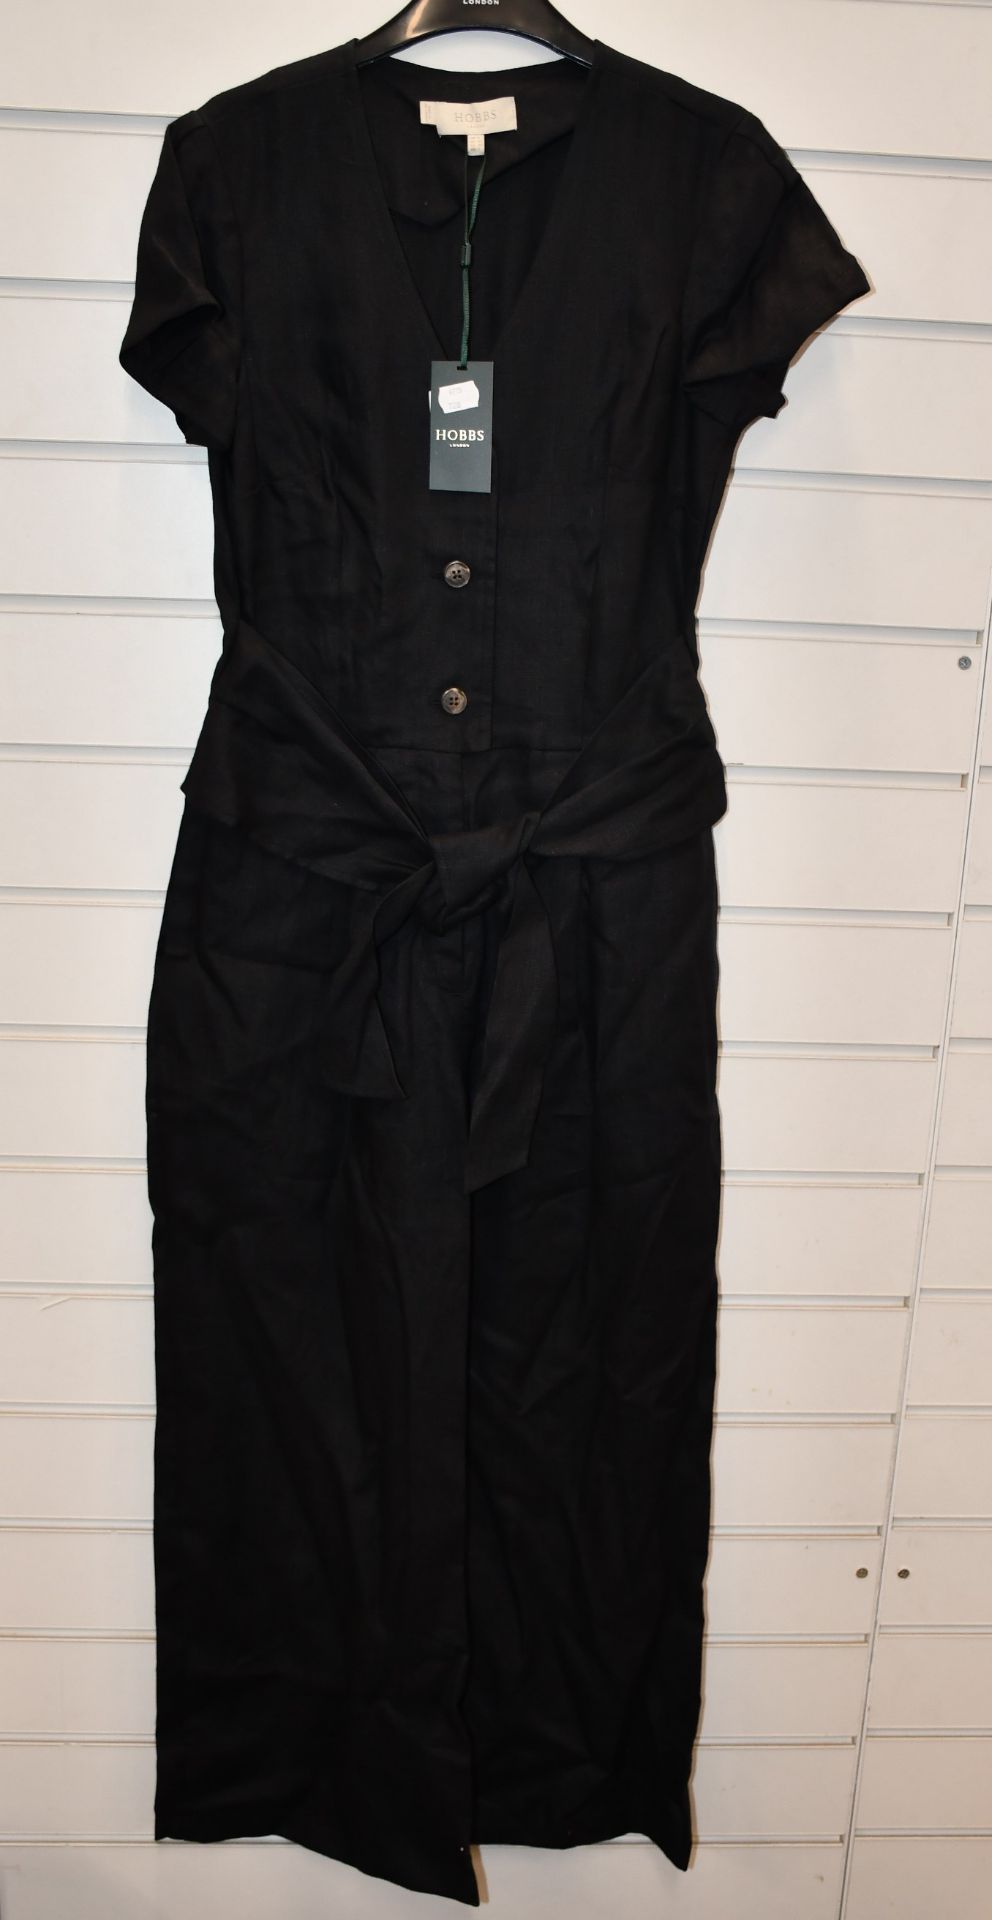 An as new Hobbs London Linen Jayne jumpsuit in black (UK 12 - RRP £145).